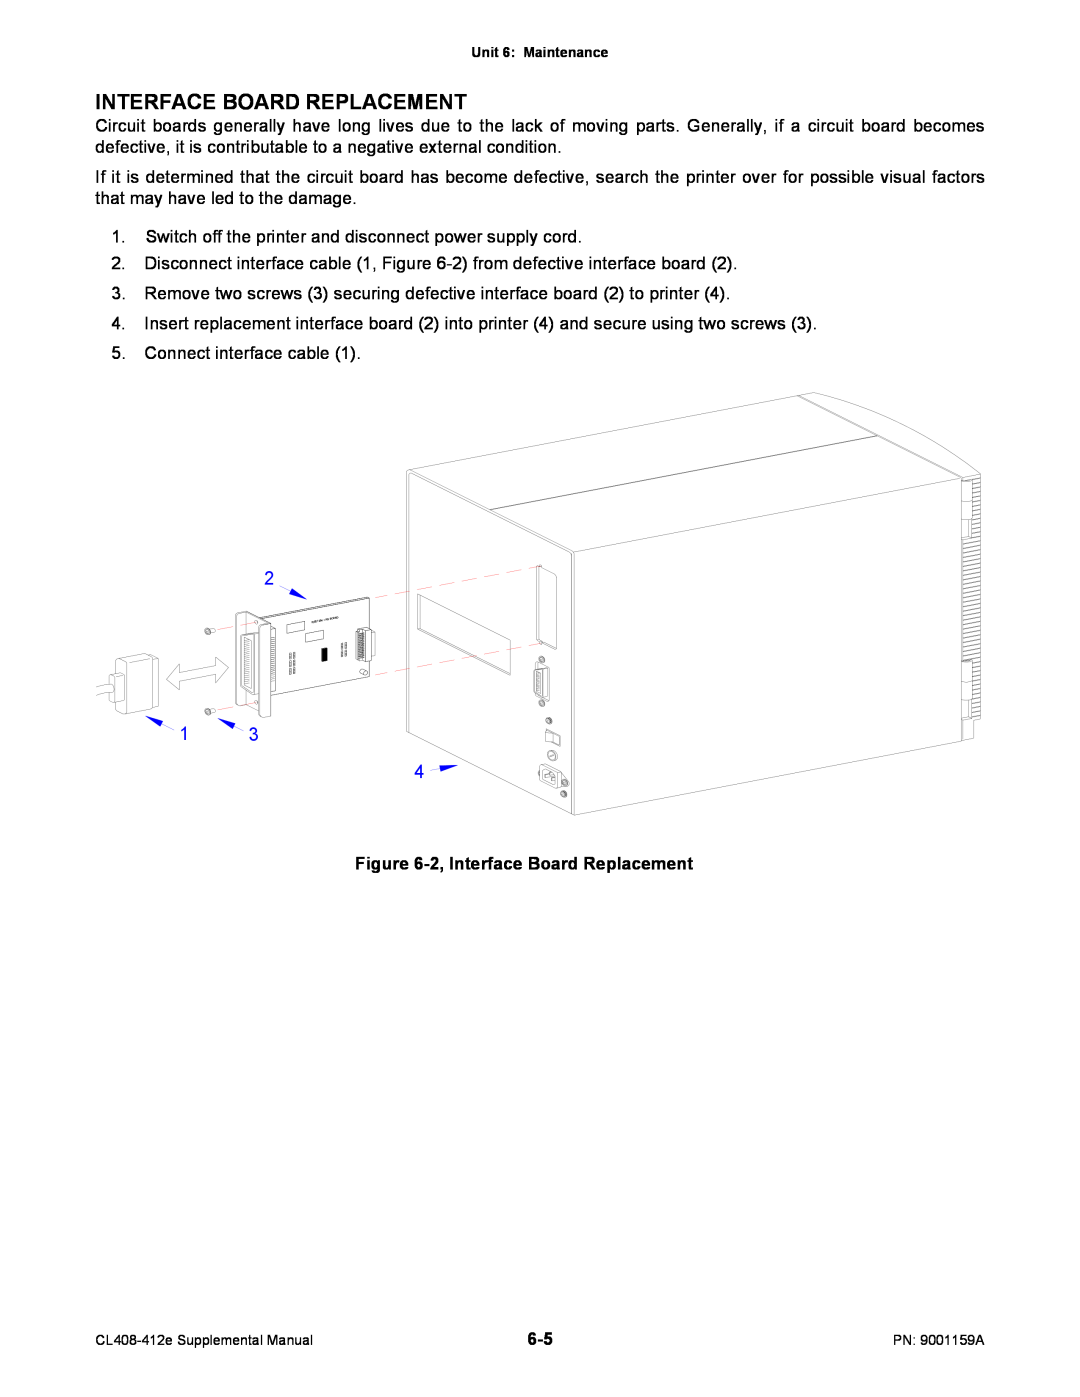 SATO CL408-412e manual 2, Interface Board Replacement 